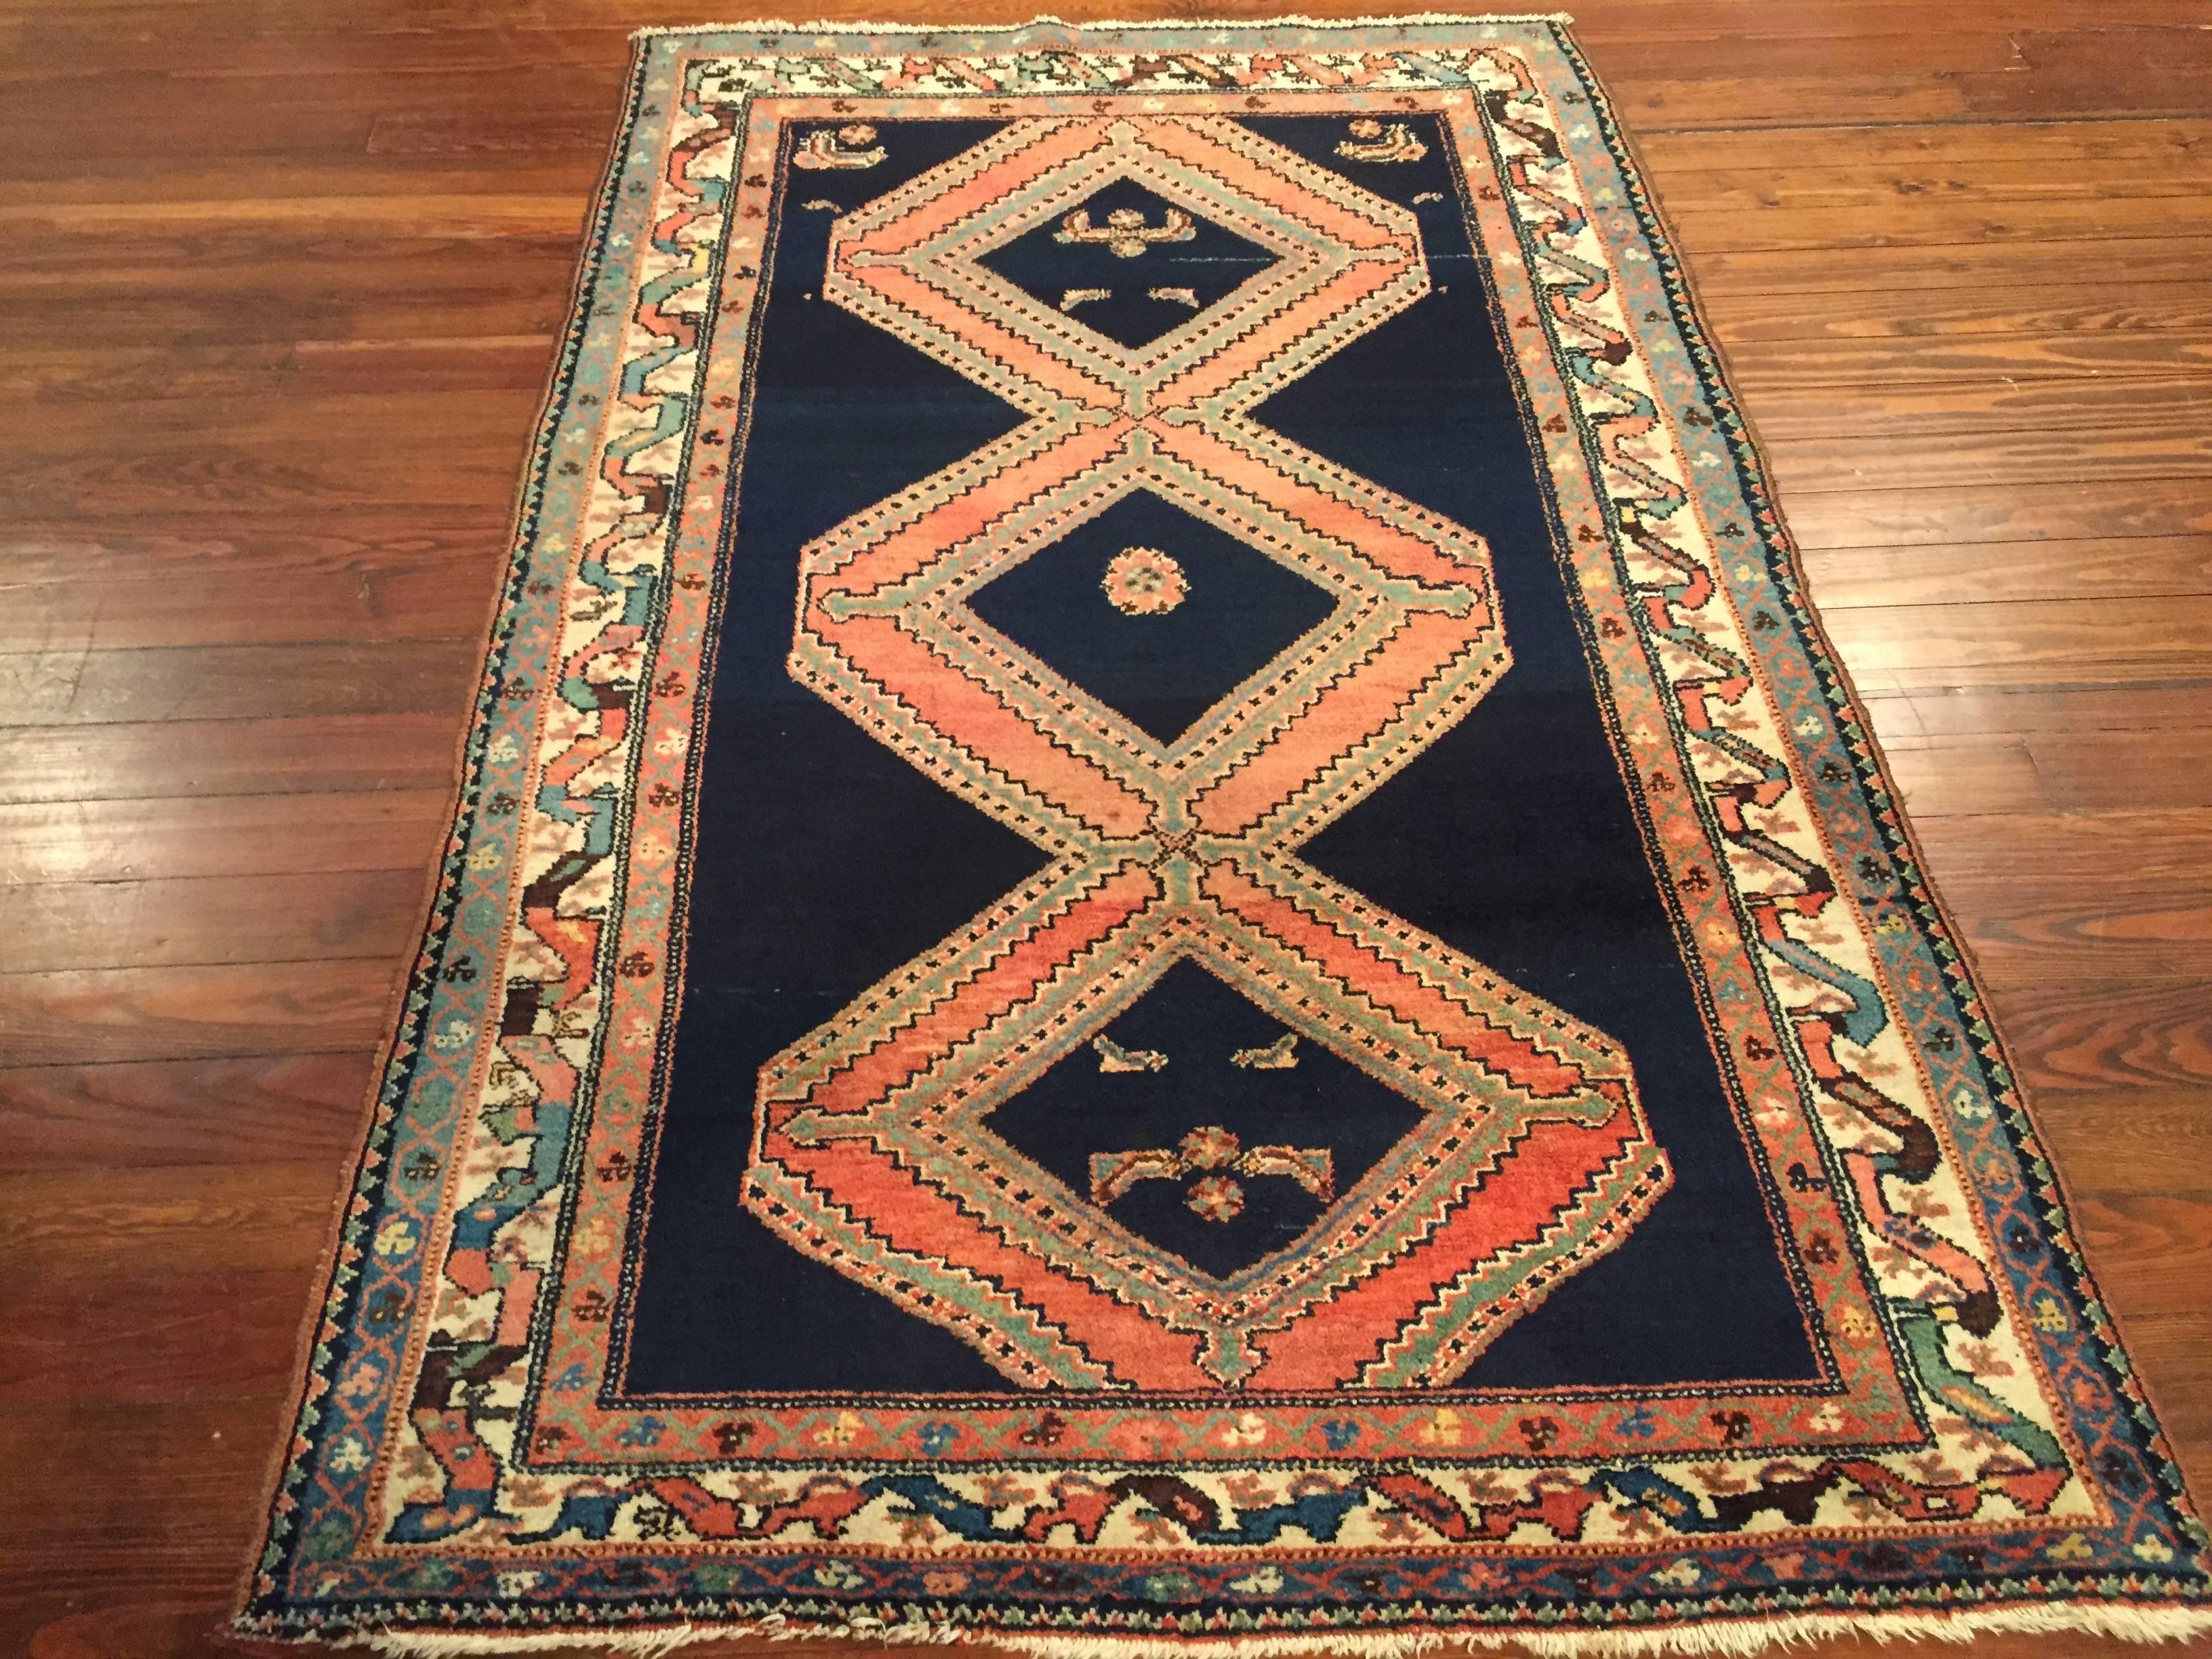 An antique Persian Malayer rug, circa 1920.